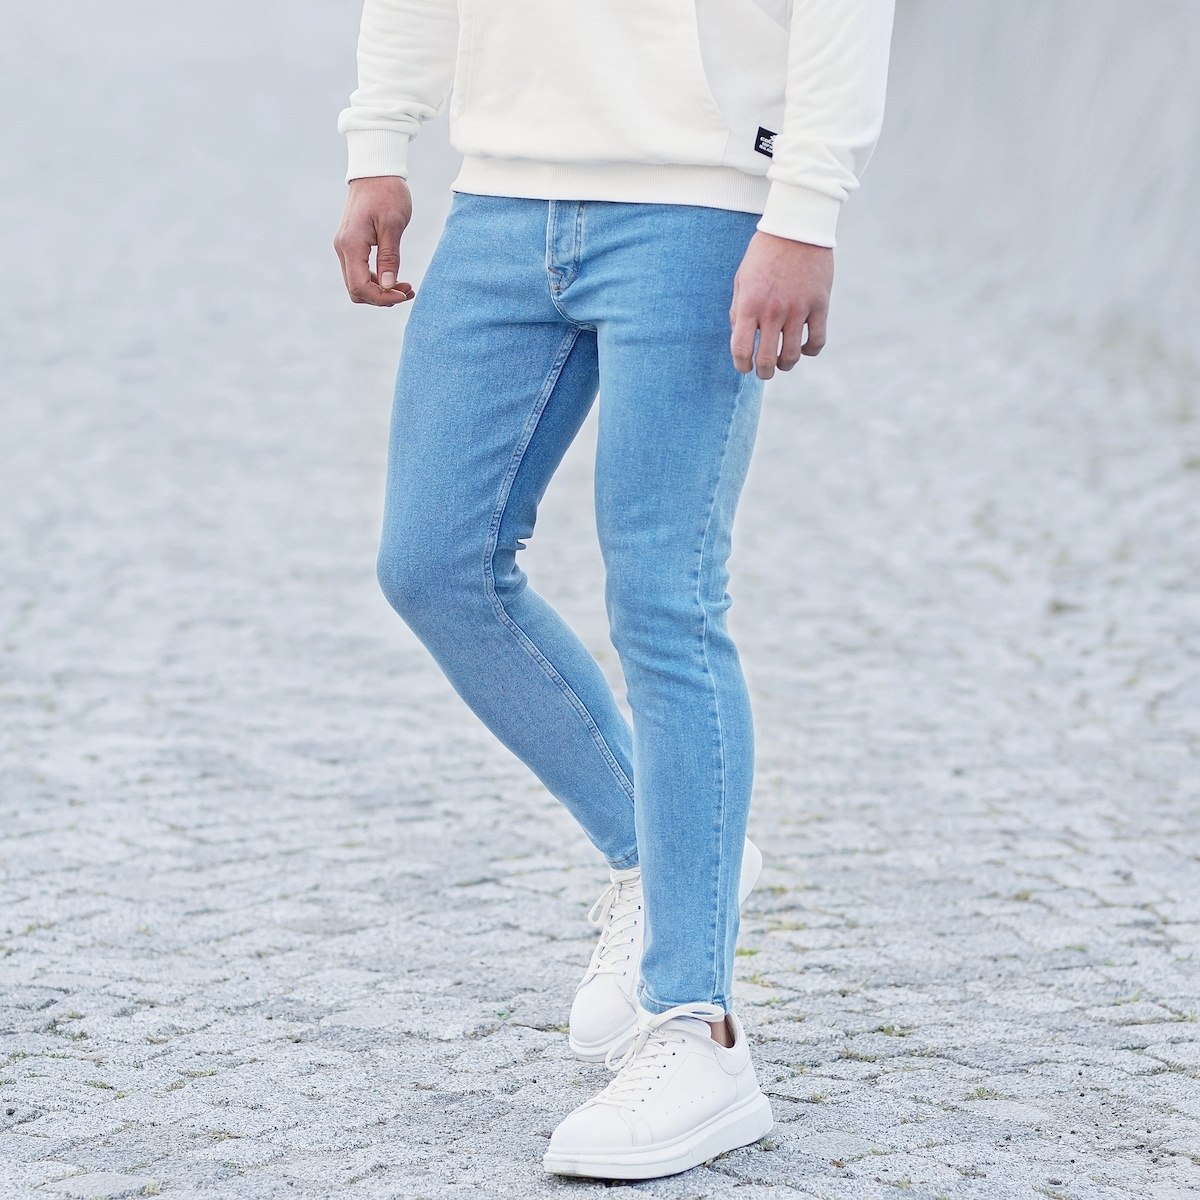 Men's Basic Skinny Jeans In Ice Blue